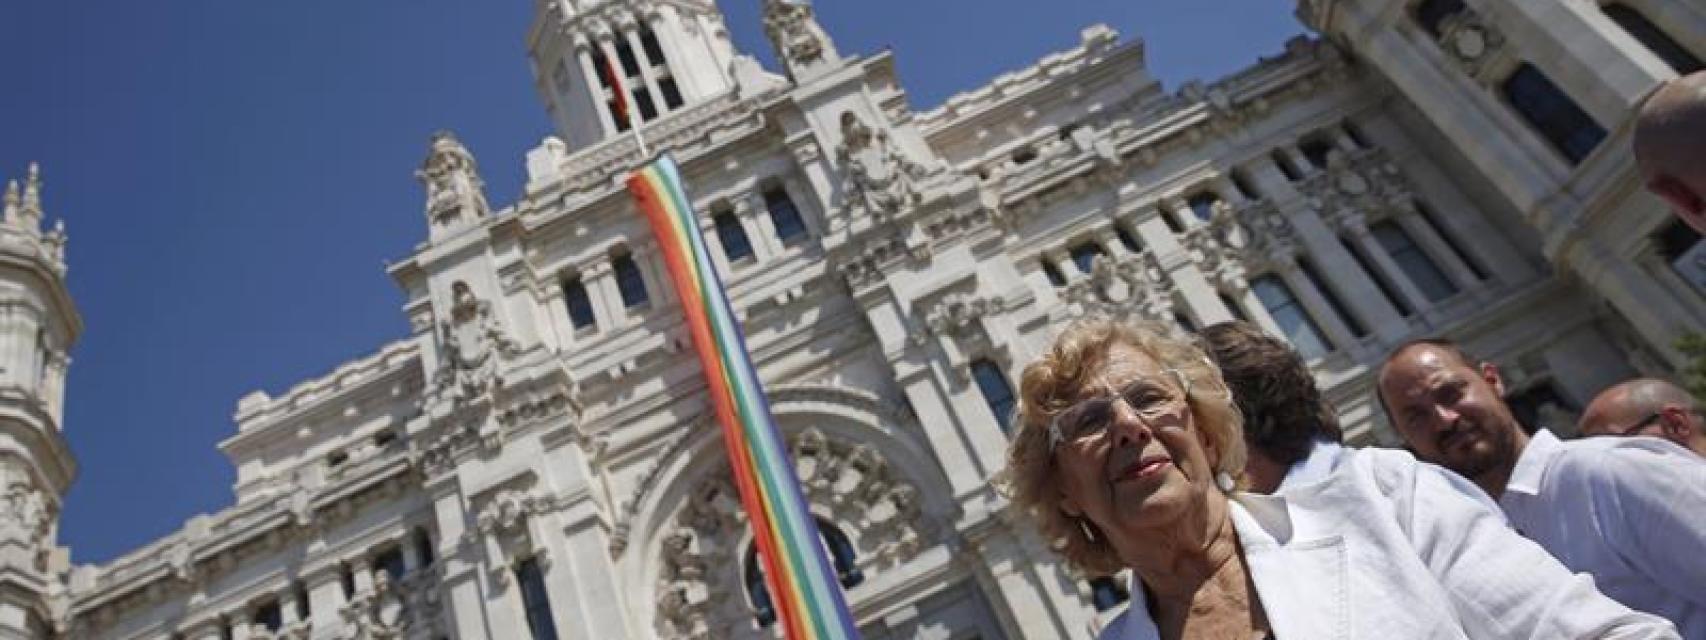 Dia_del_Orgullo_Gay-Ayuntamiento_de_Madrid-Manuela_Carmena-Ahora_Madrid-Sociedad_136248372_8488481_1706x640.jpg